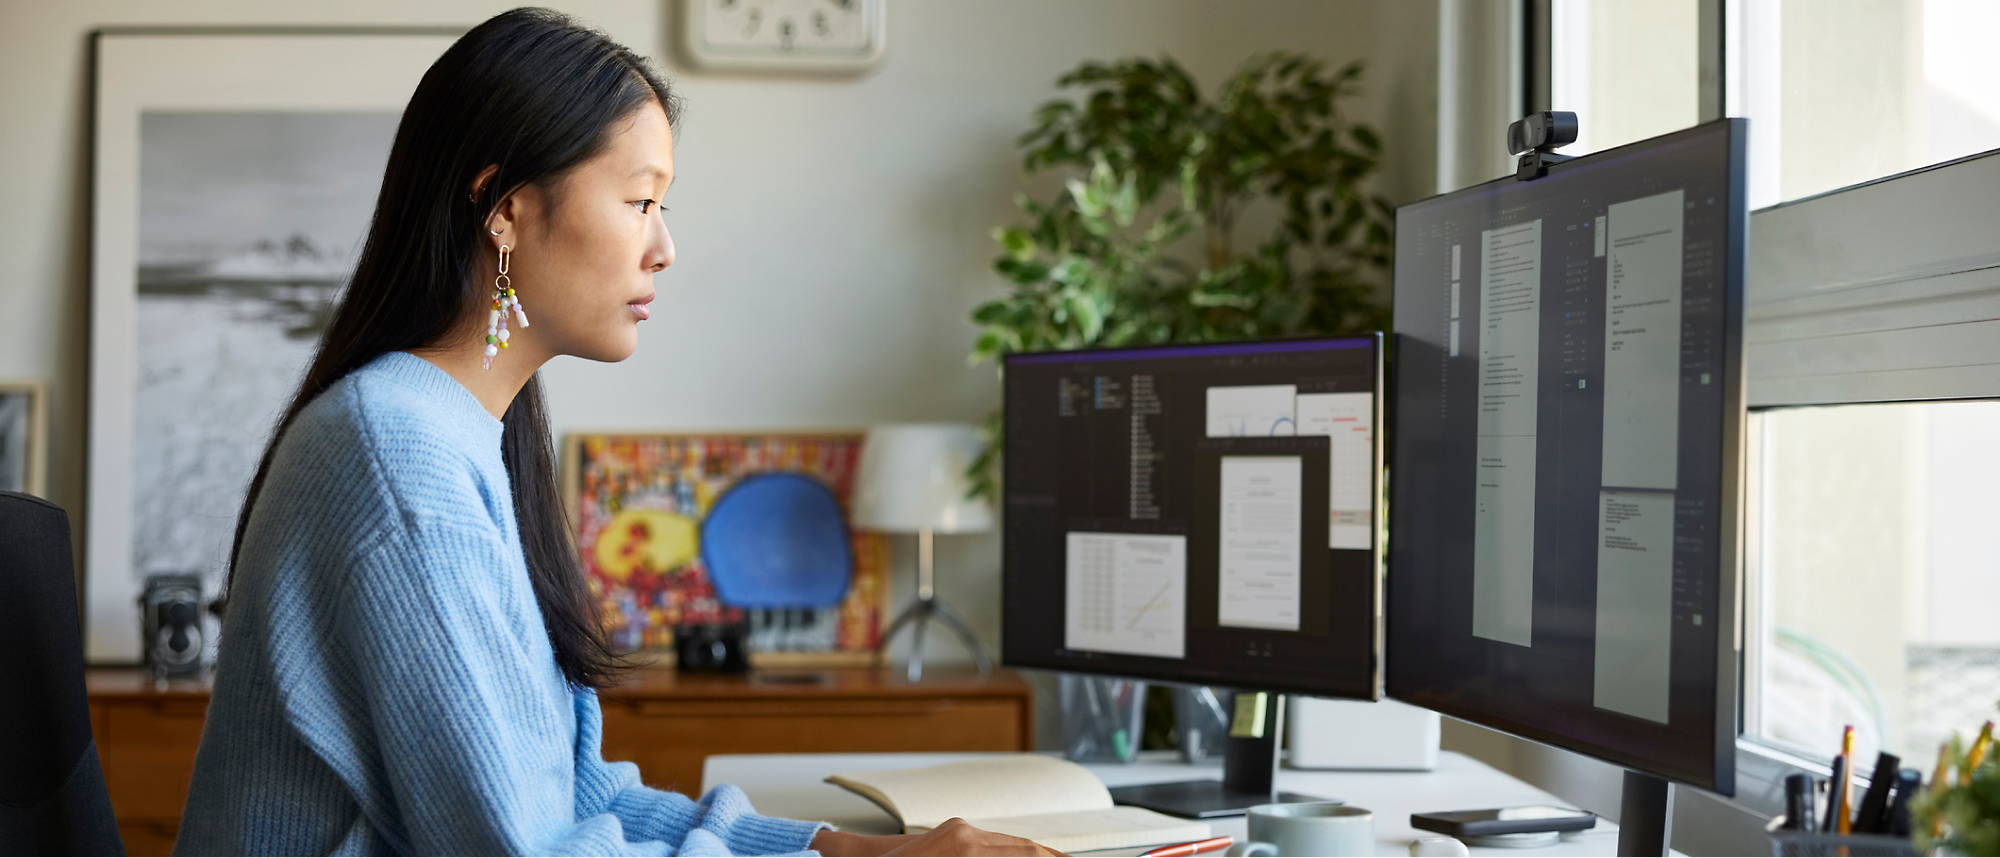 Una persona trabaja en el escritorio con varios monitores que muestran documentos y código